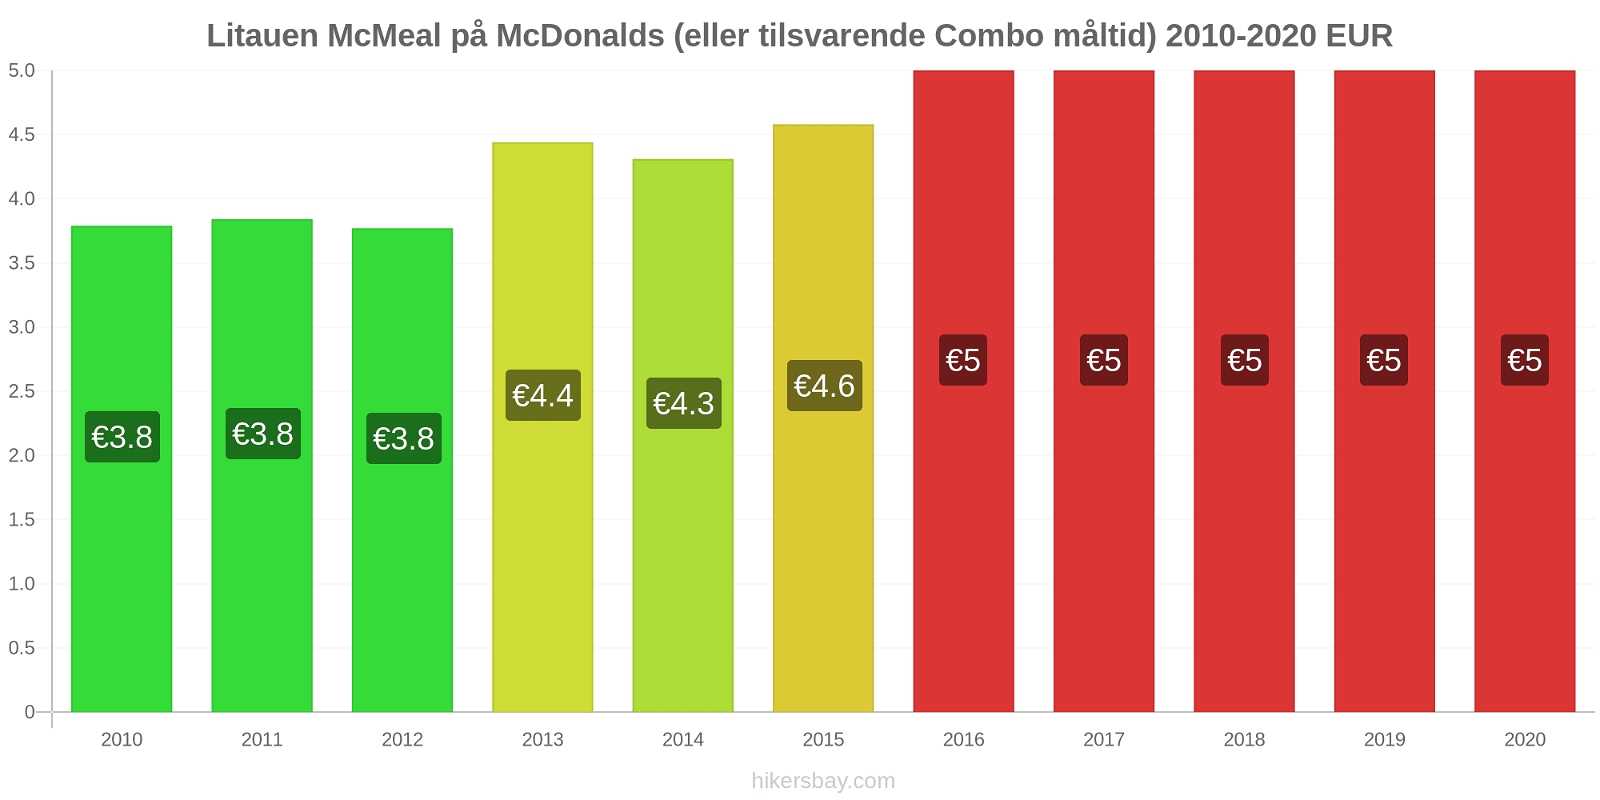 Litauen prisendringer McMeal på McDonalds (eller tilsvarende Combo måltid) hikersbay.com